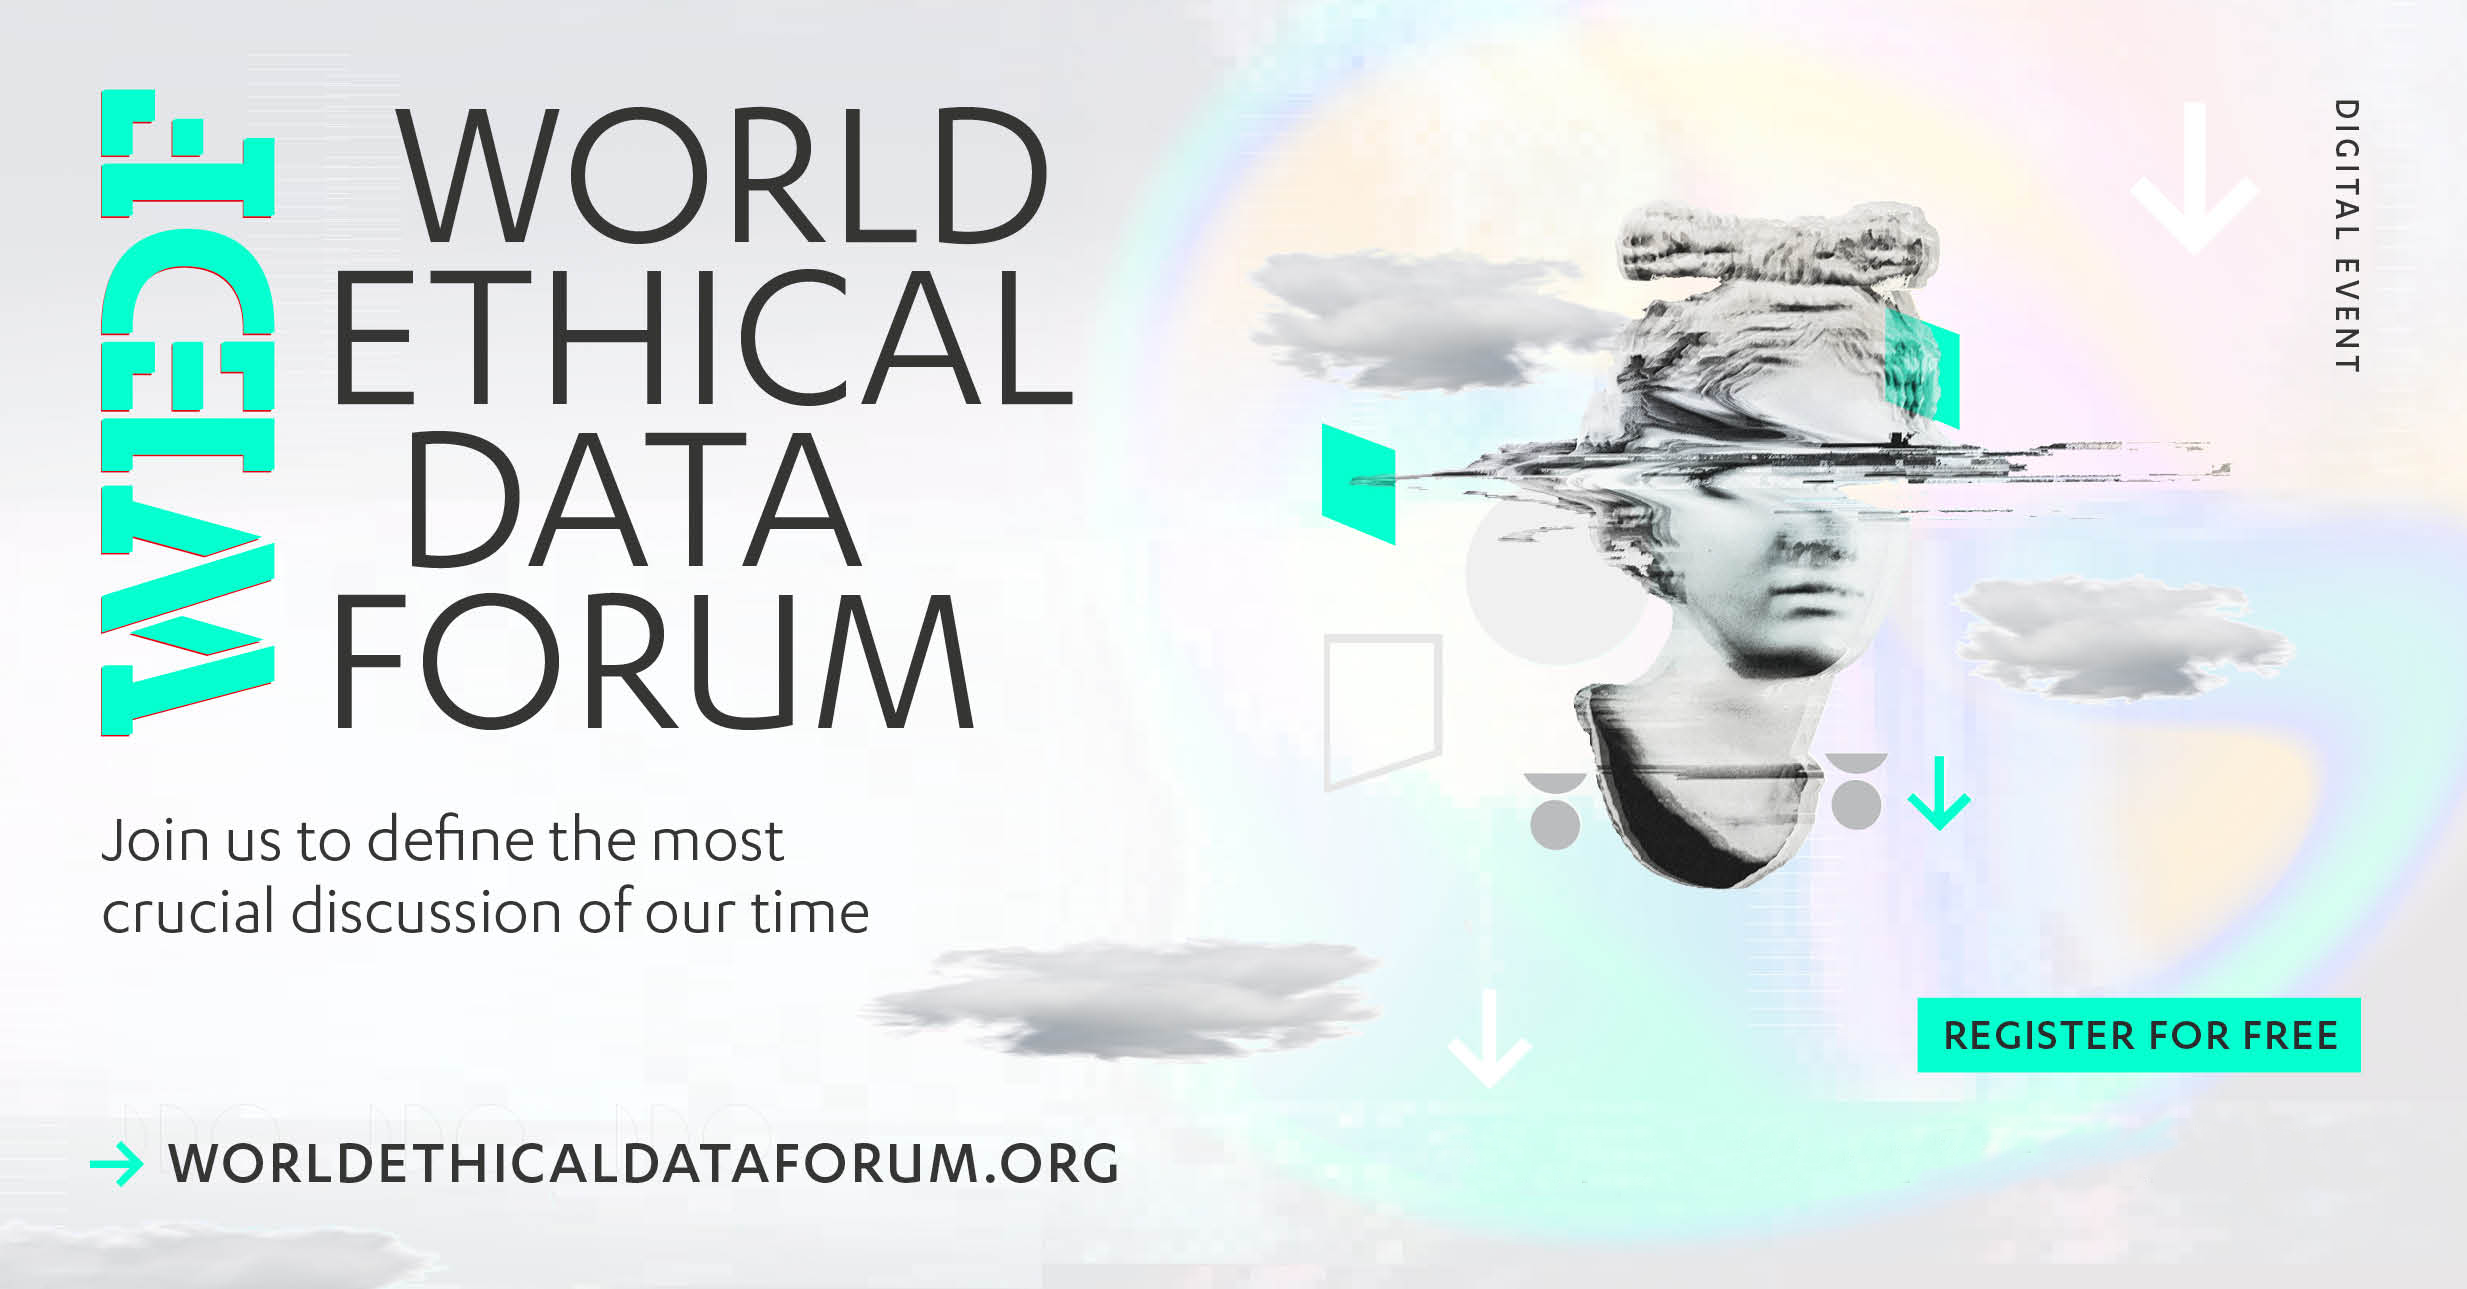 worldethicaldataforum.org